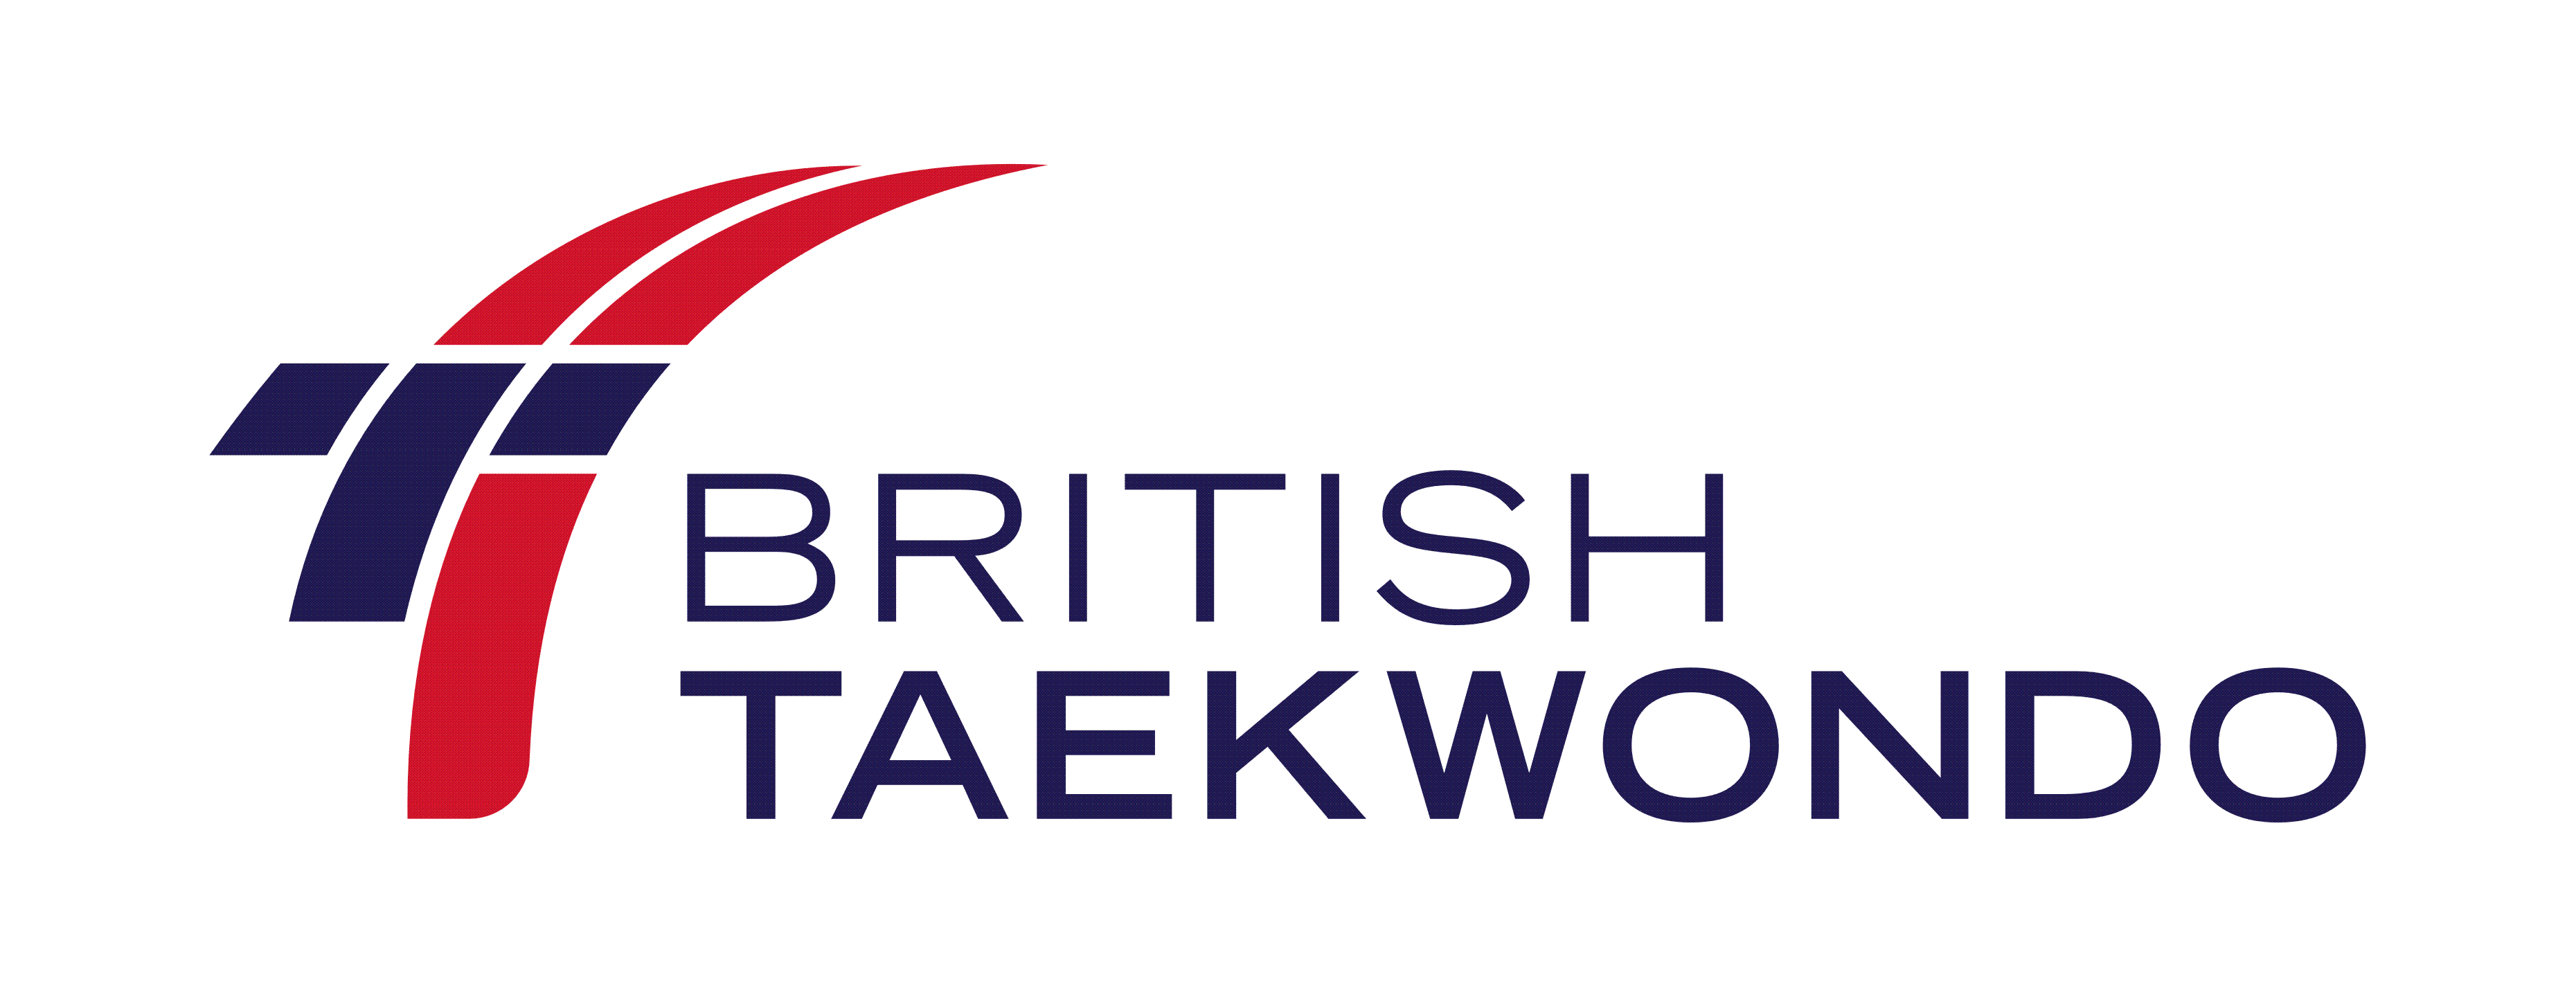 British Taekwondo